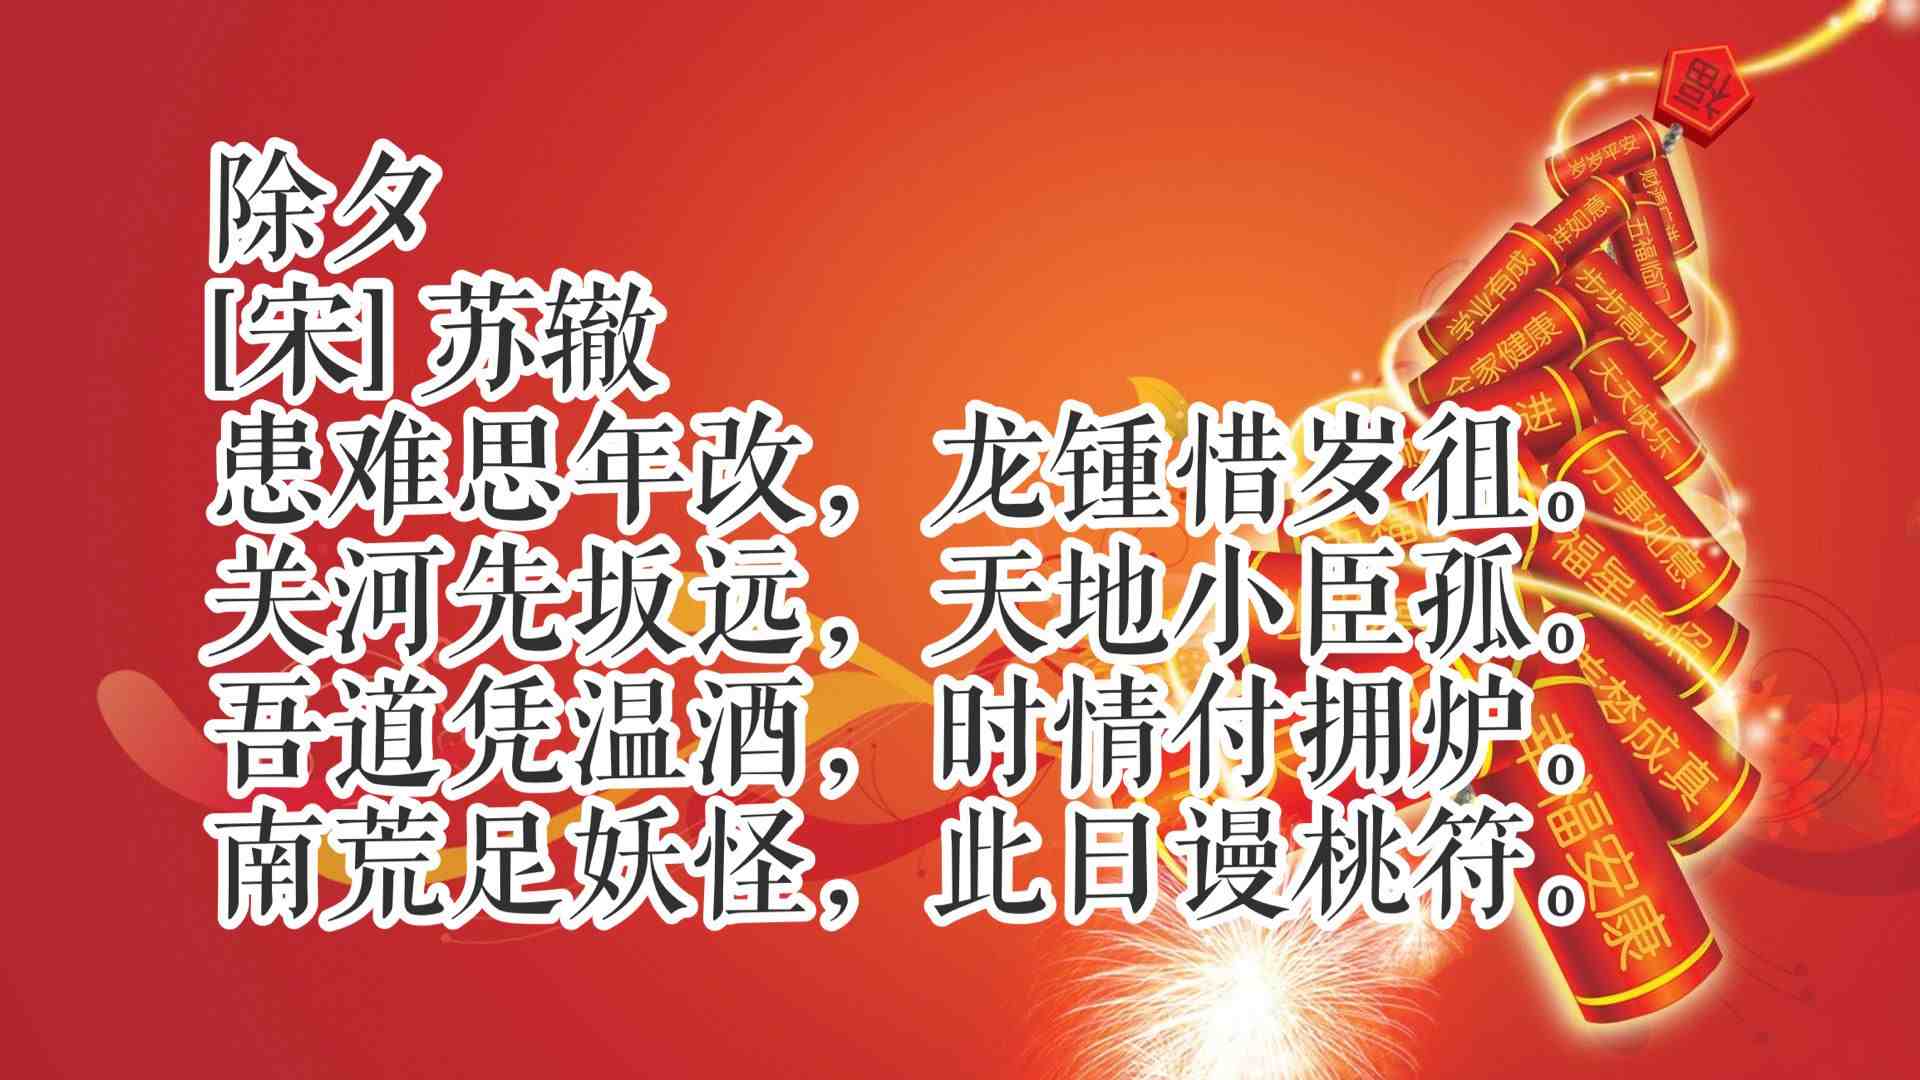 除夕读十首古诗词,共同感受中国传统文化氛围